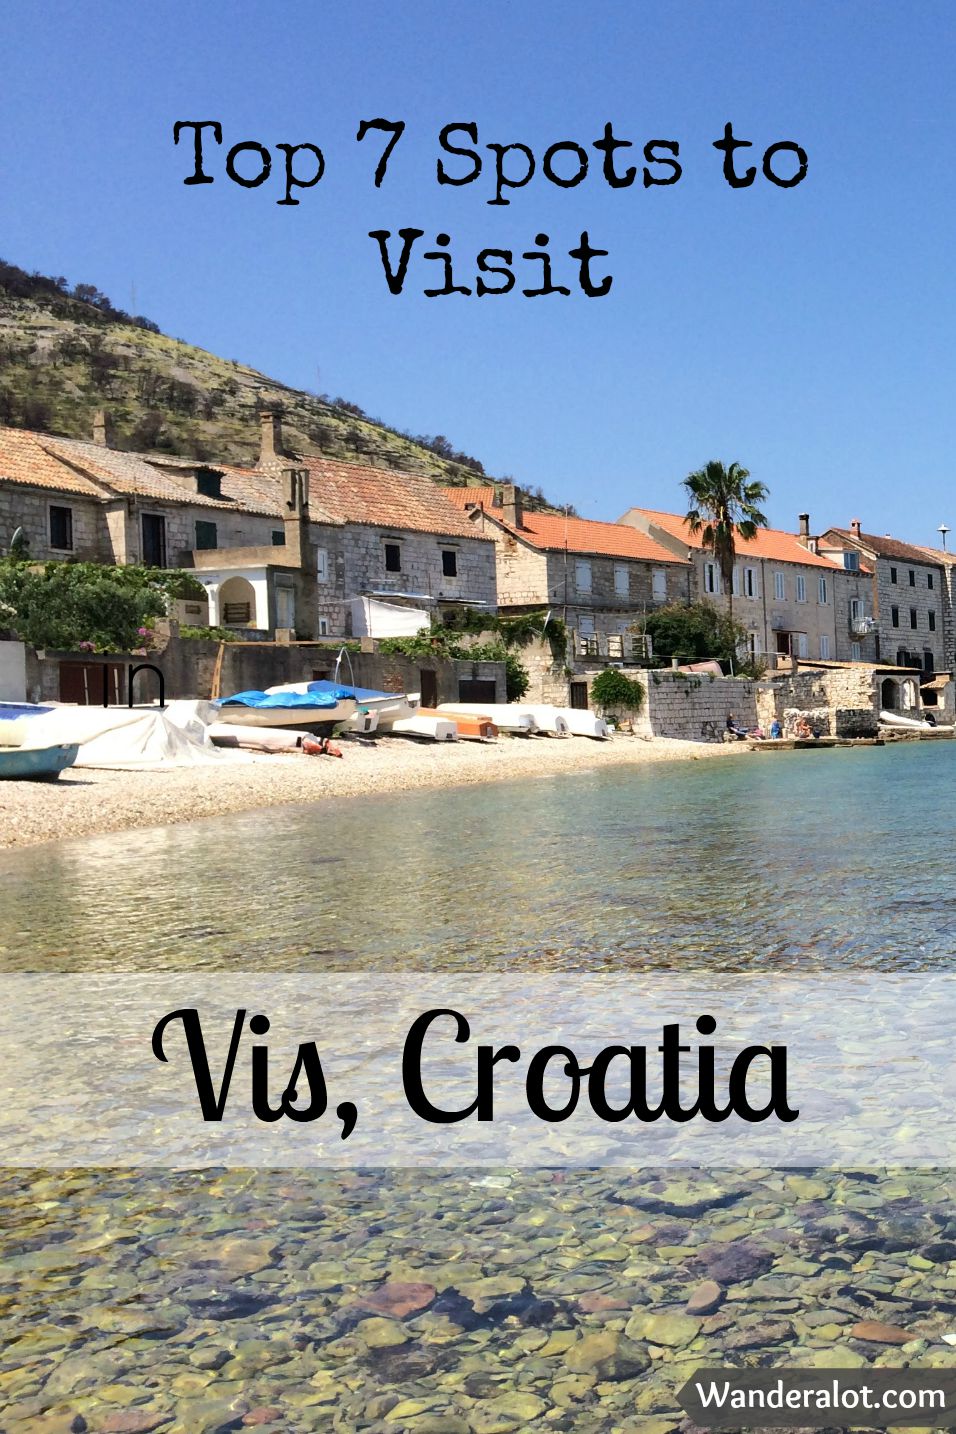 Top Seven Spots to Visit in Vis, Croatia - Wanderalot